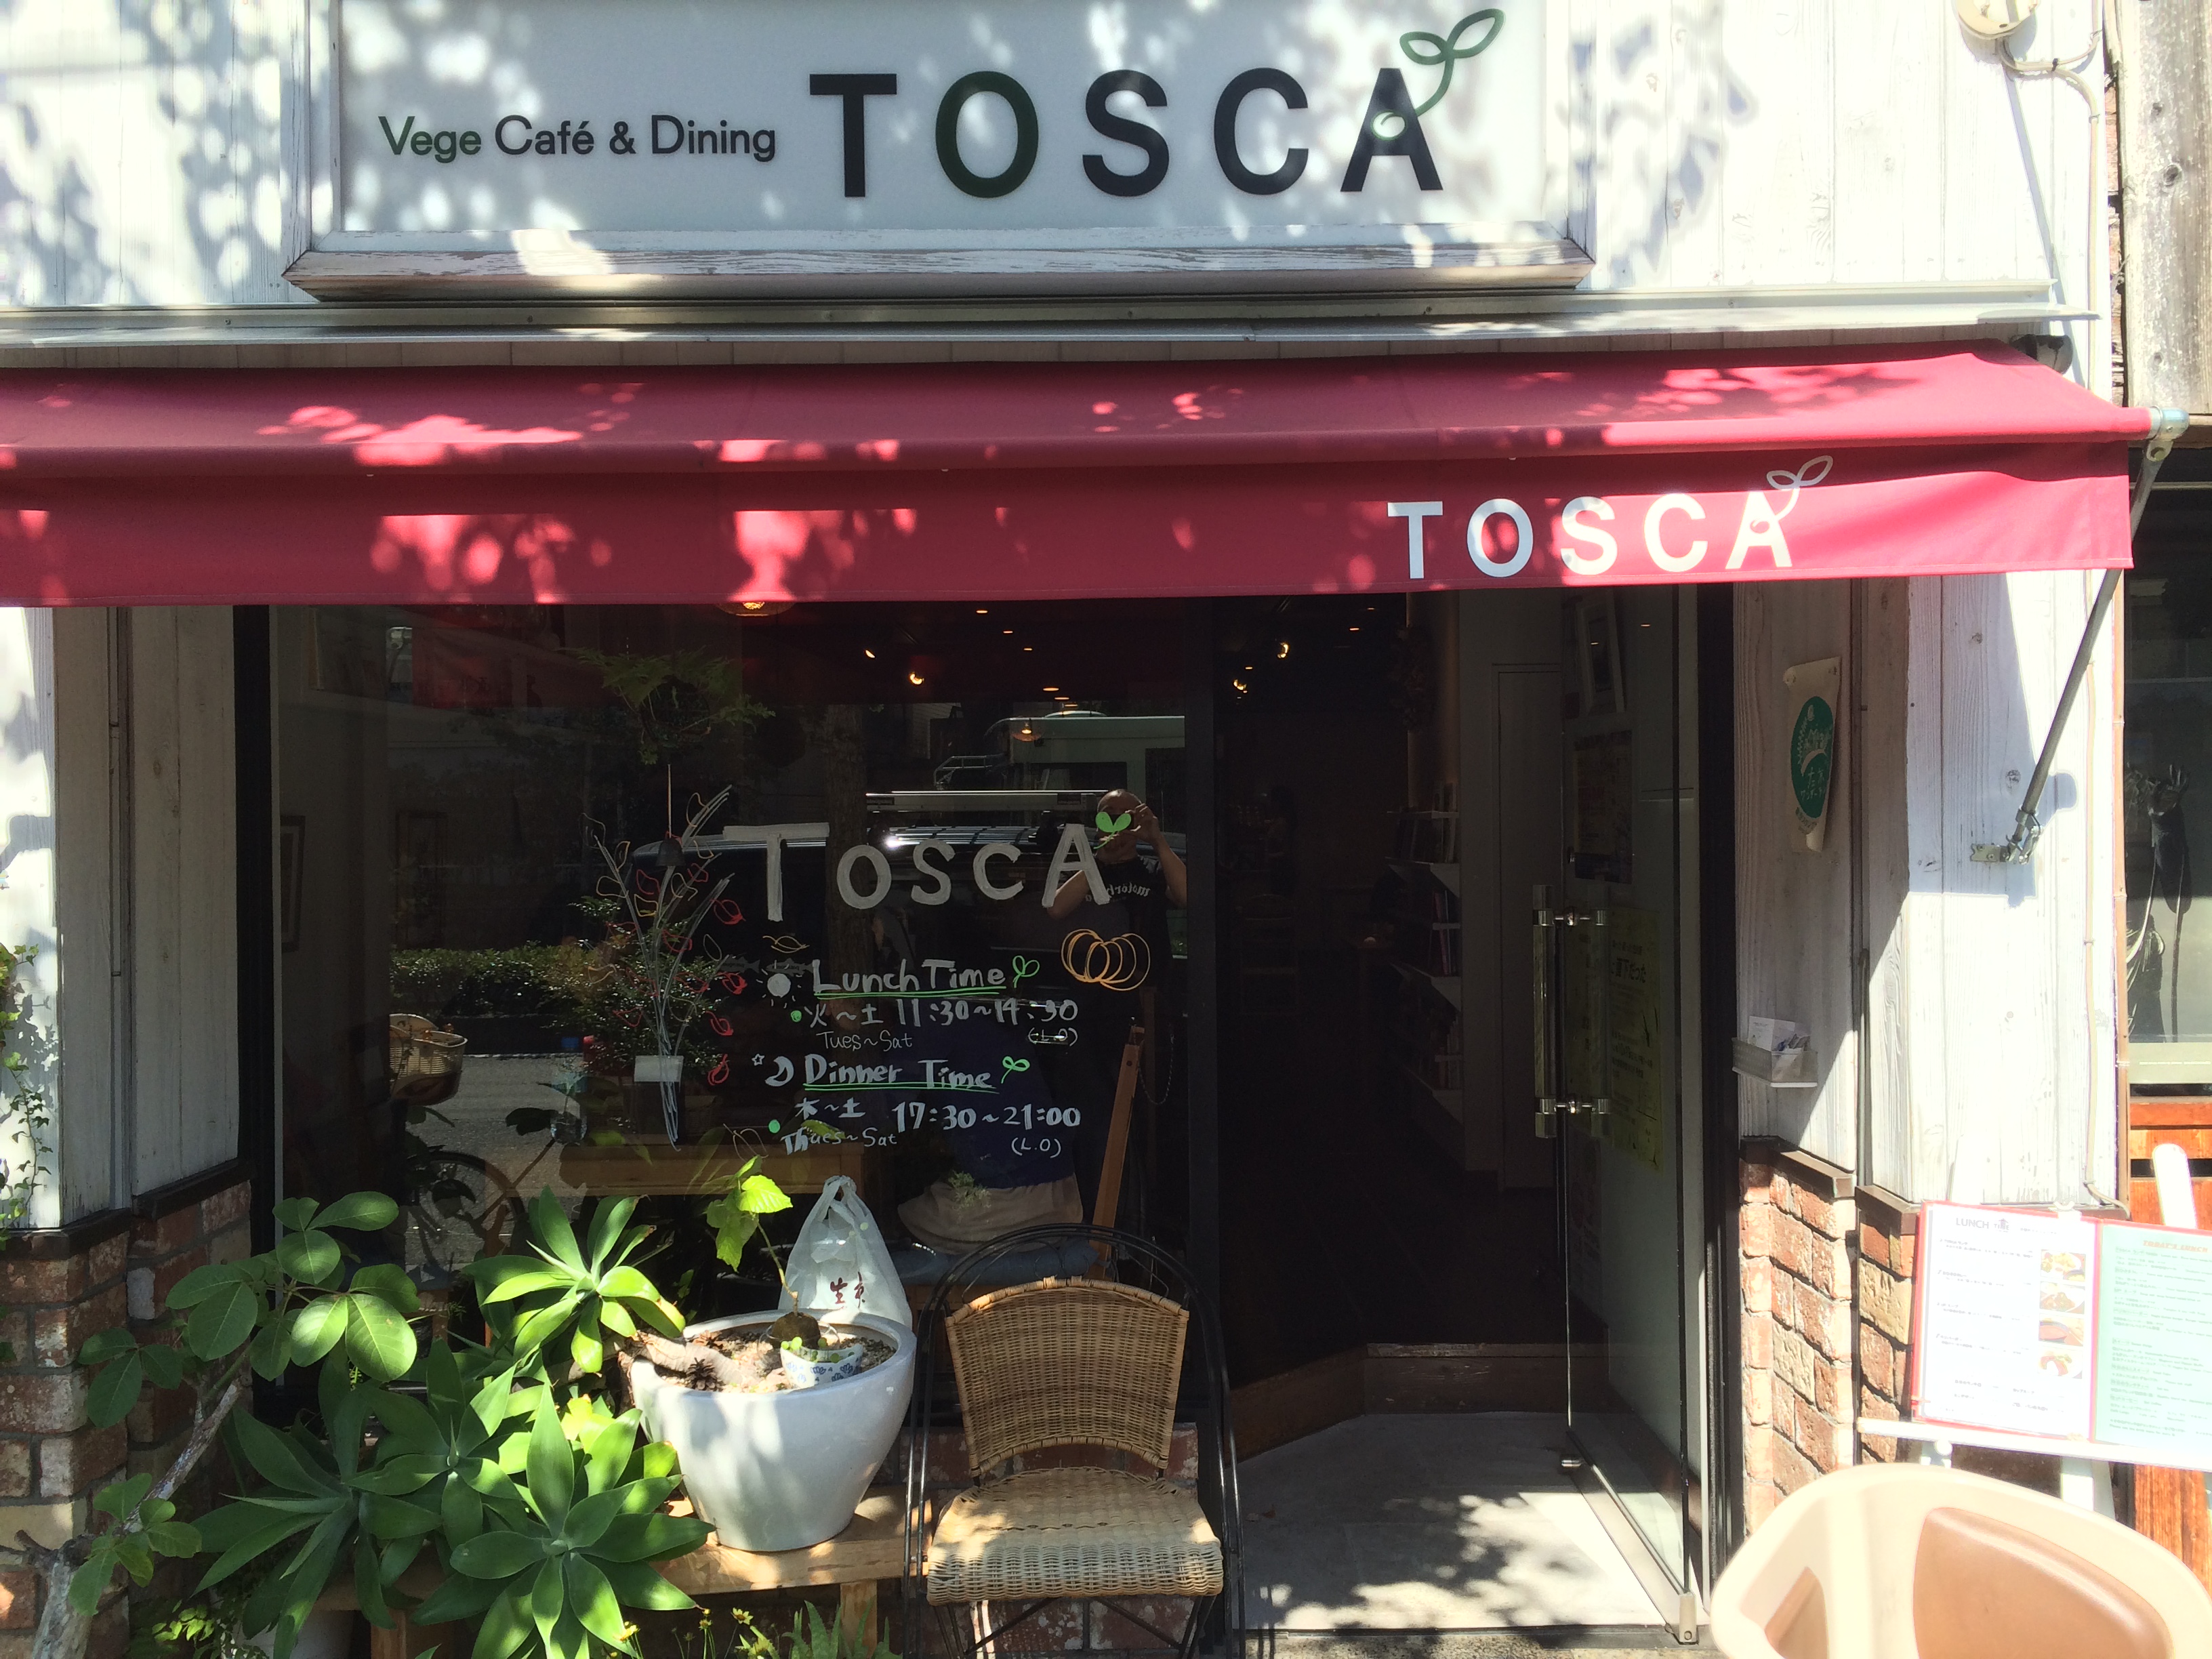 Vege Cafe & Dining TOSCA>